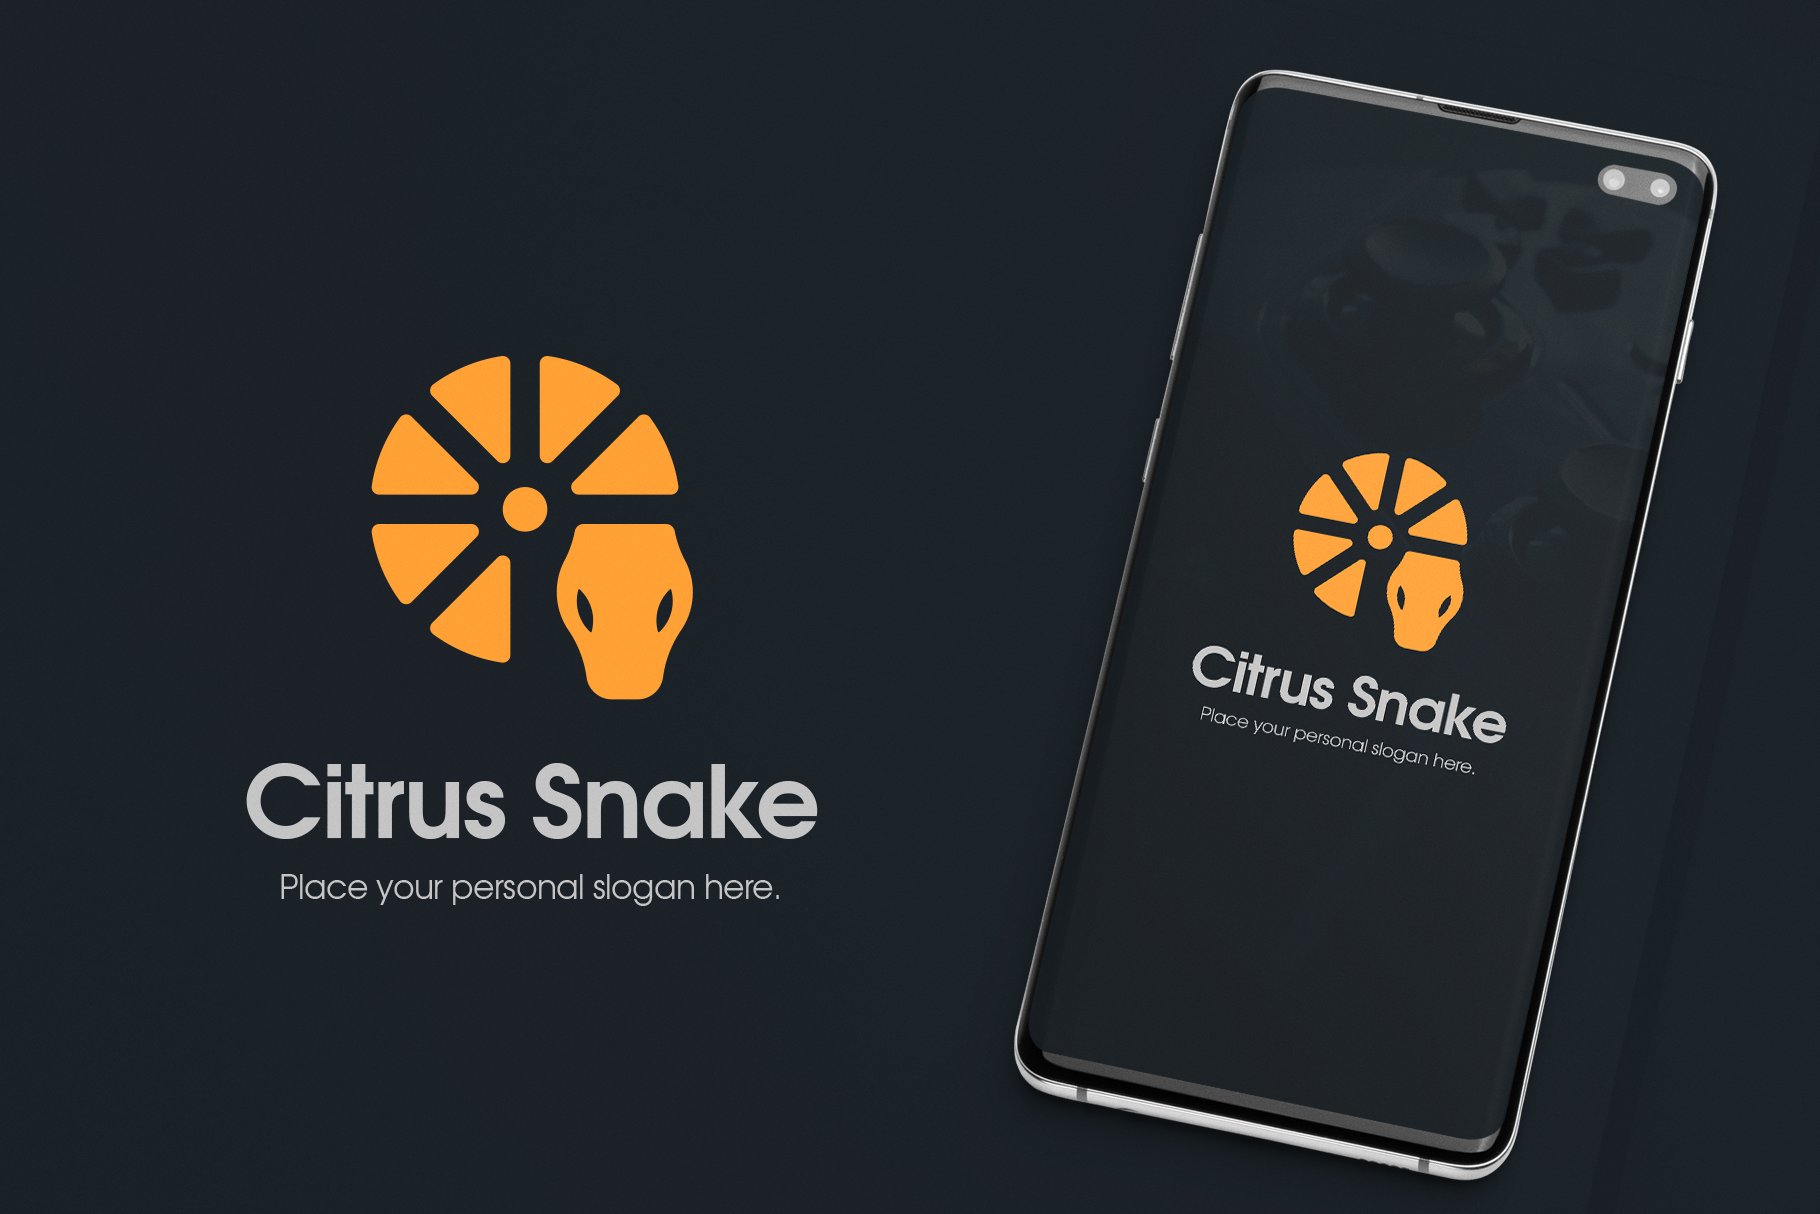 Lemon Citrus Snake Logo cover image.